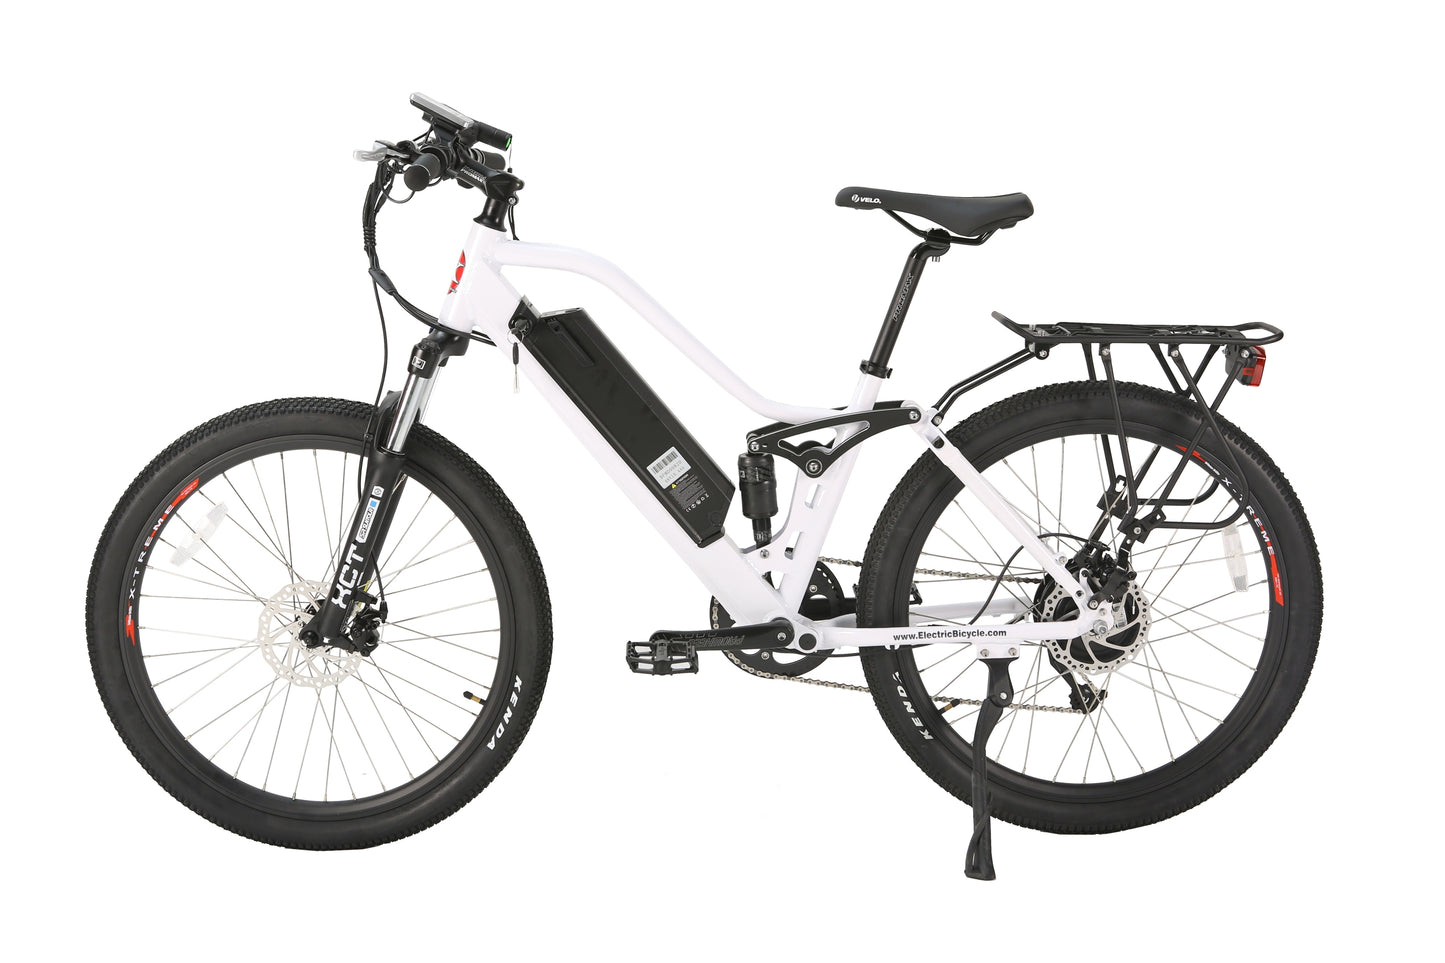 X-Treme Sedona 48 Volt Electric Step-Through Mountain Bicycle-Metallic White